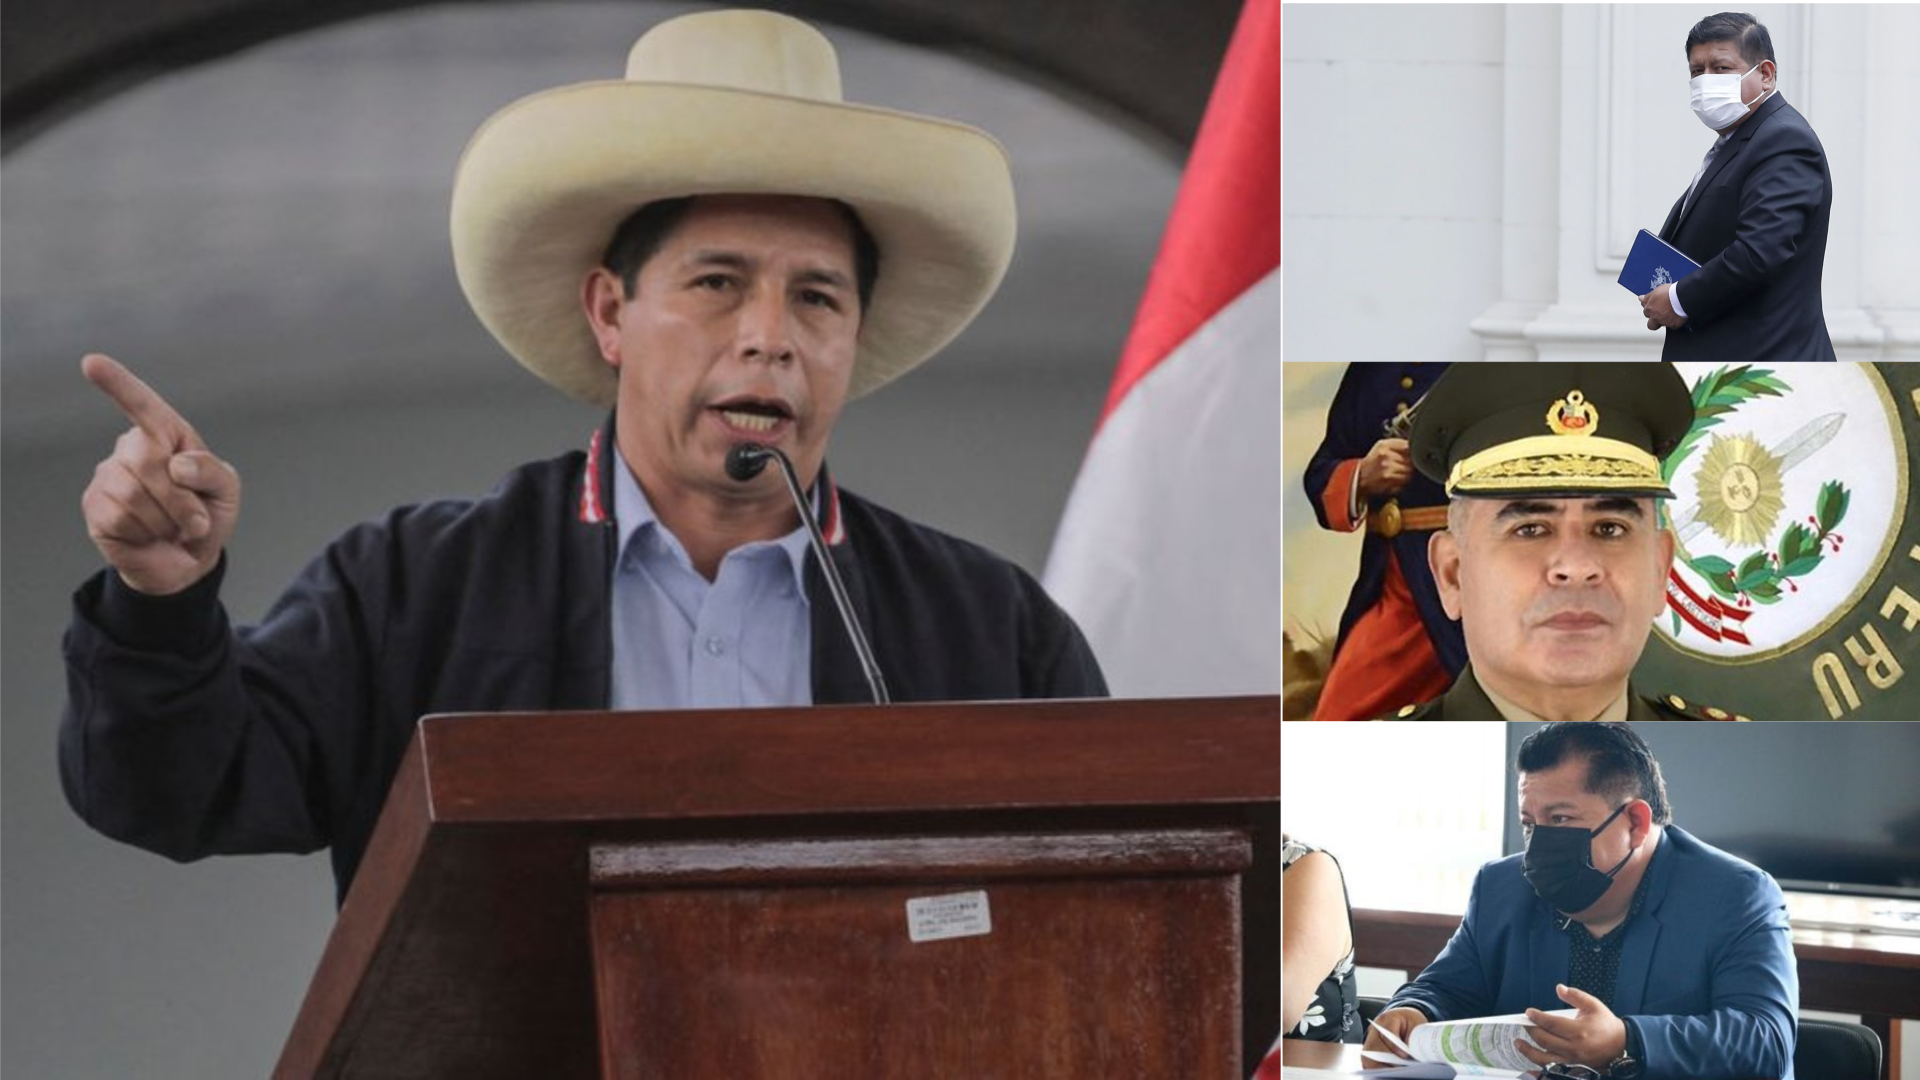 El escándalo de los ascensos irregulares en las FF.AA. que involucra a Pedro Castillo, generales PNP y exministros de Estado